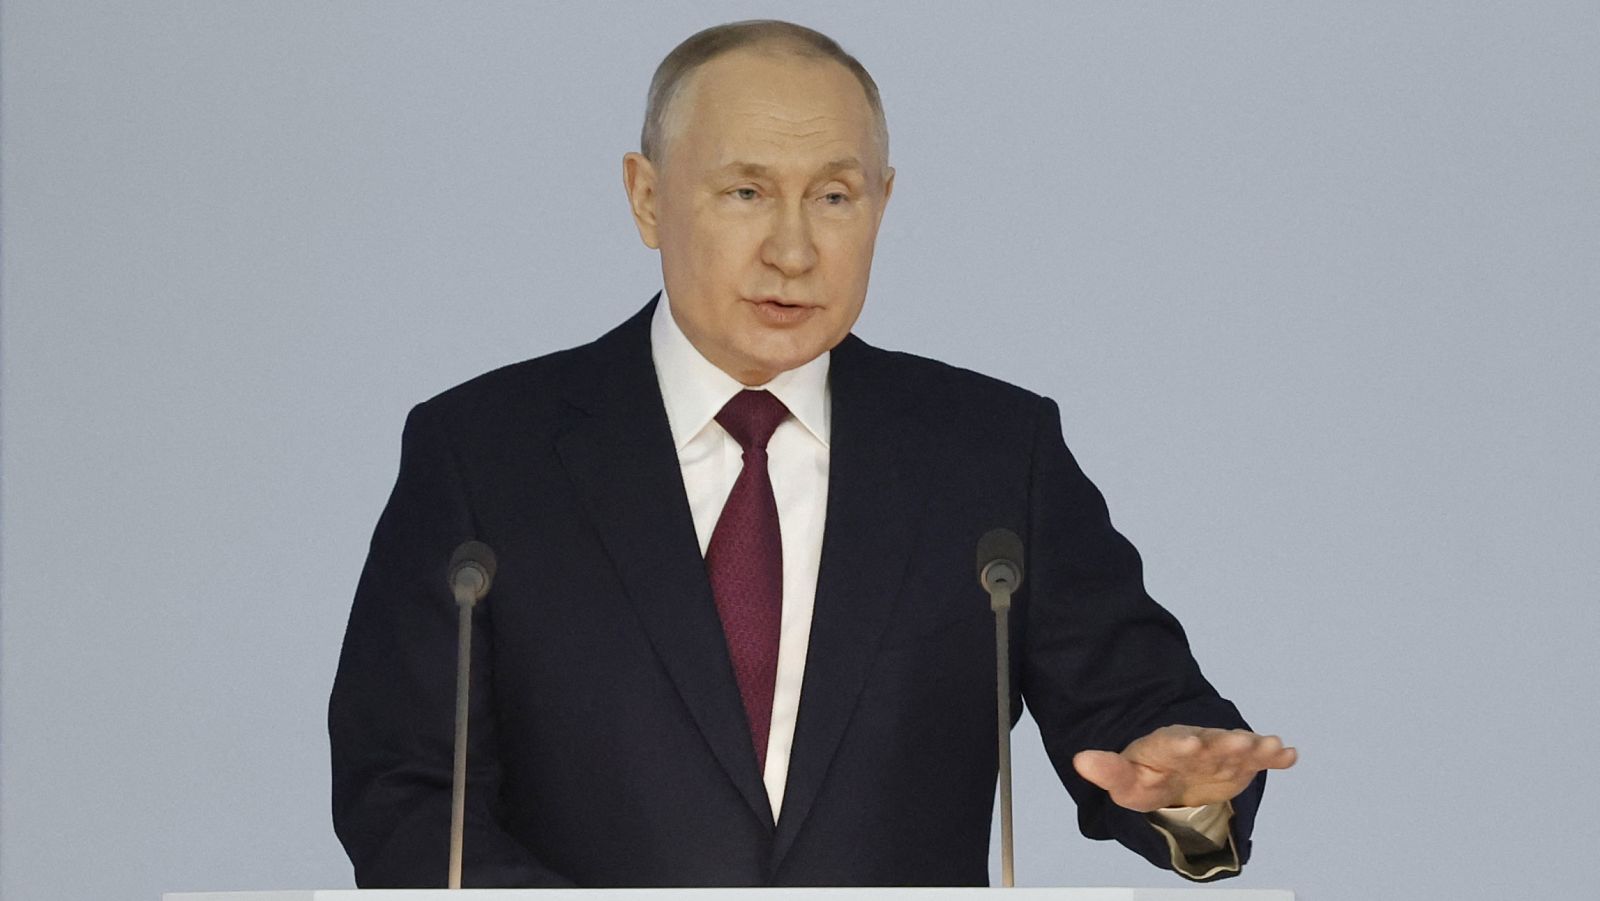 Putin da su primer discurso a la nación en dos años